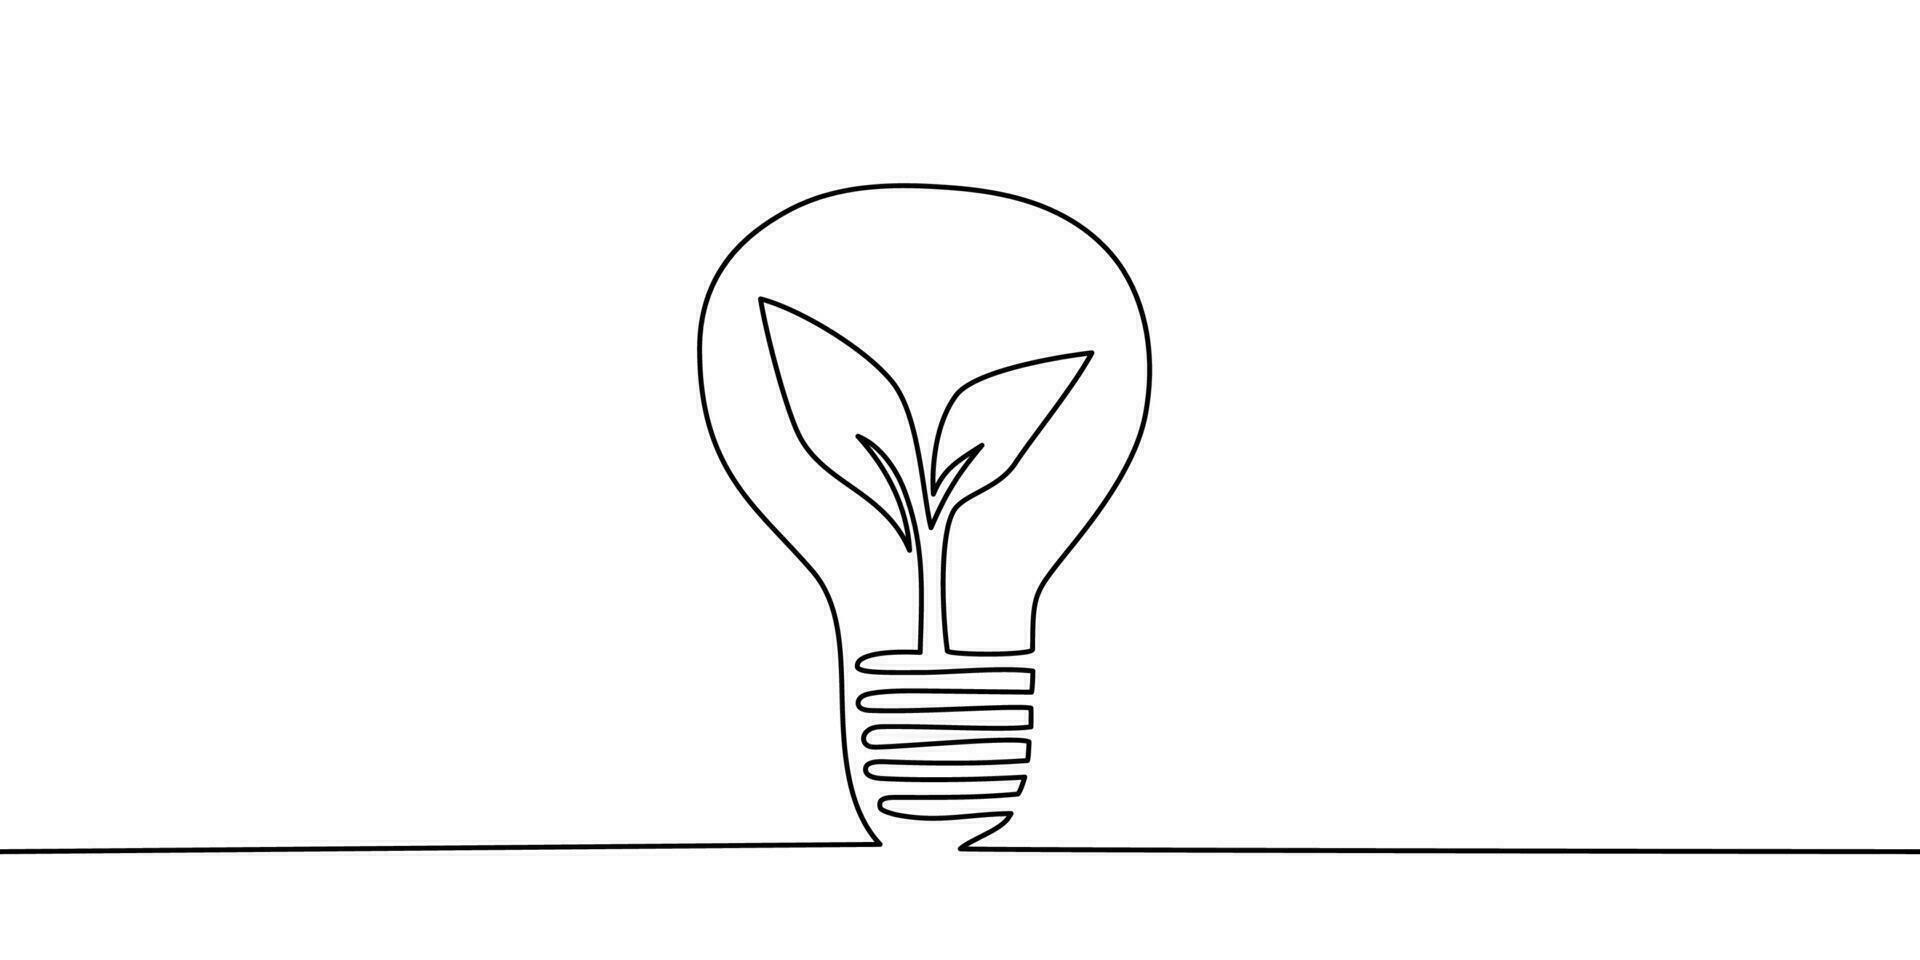 een lijn licht lamp met fabriek. doorlopend single lijn ecologisch, energie veilig concept lamp kunst. brainstorm, bedrijf oplossing ontwerp concept. vector